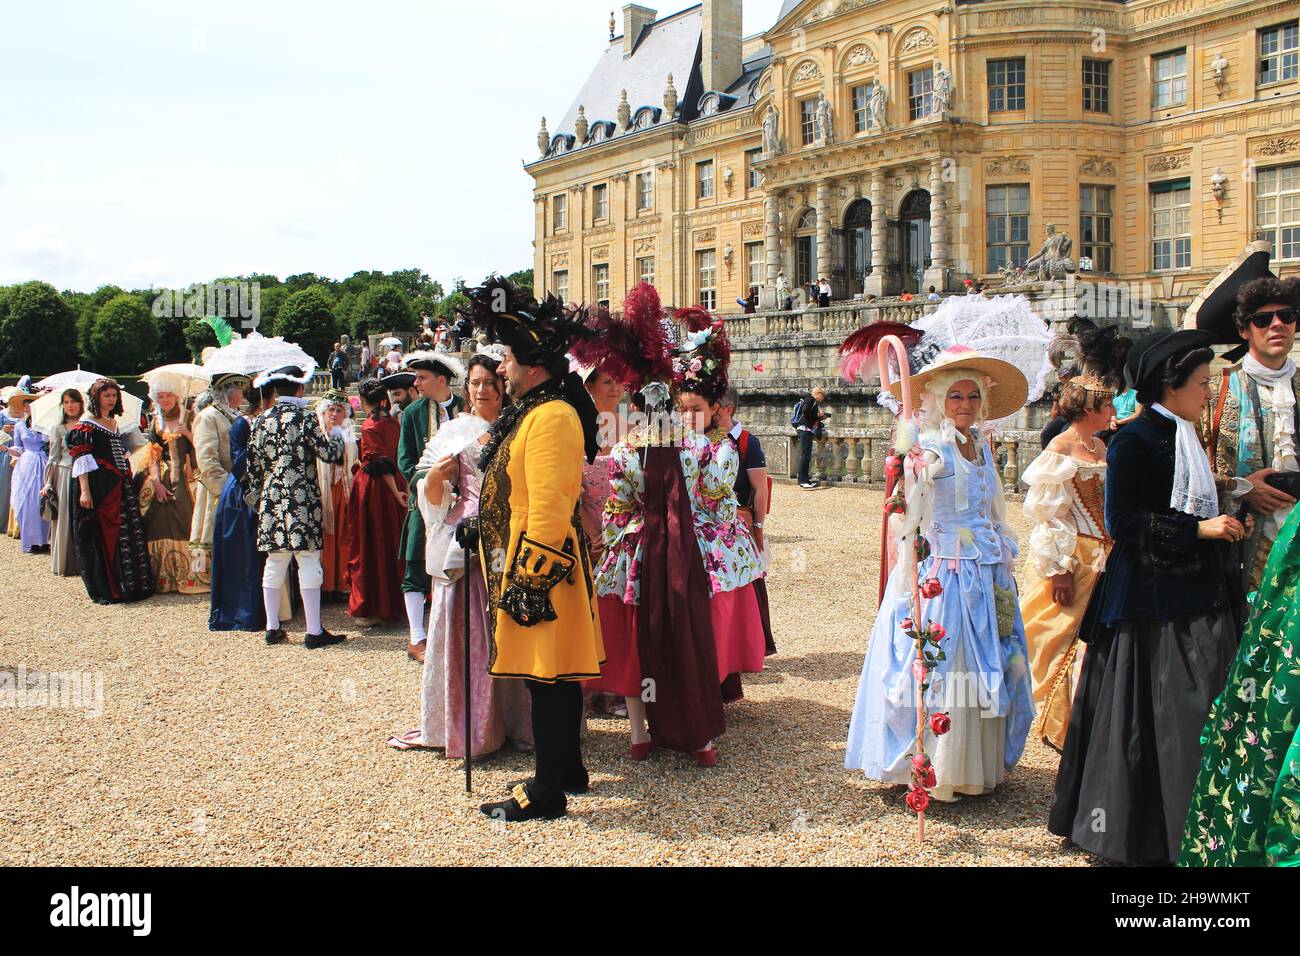 Besucher in Kostümen aus dem 17th. Jahrhundert stehen während des Grand Siècle Day im Chateau Vaux-le-Vicomte, 34 Meilen von Paris entfernt, für einen Kostümwettbewerb an Stockfoto